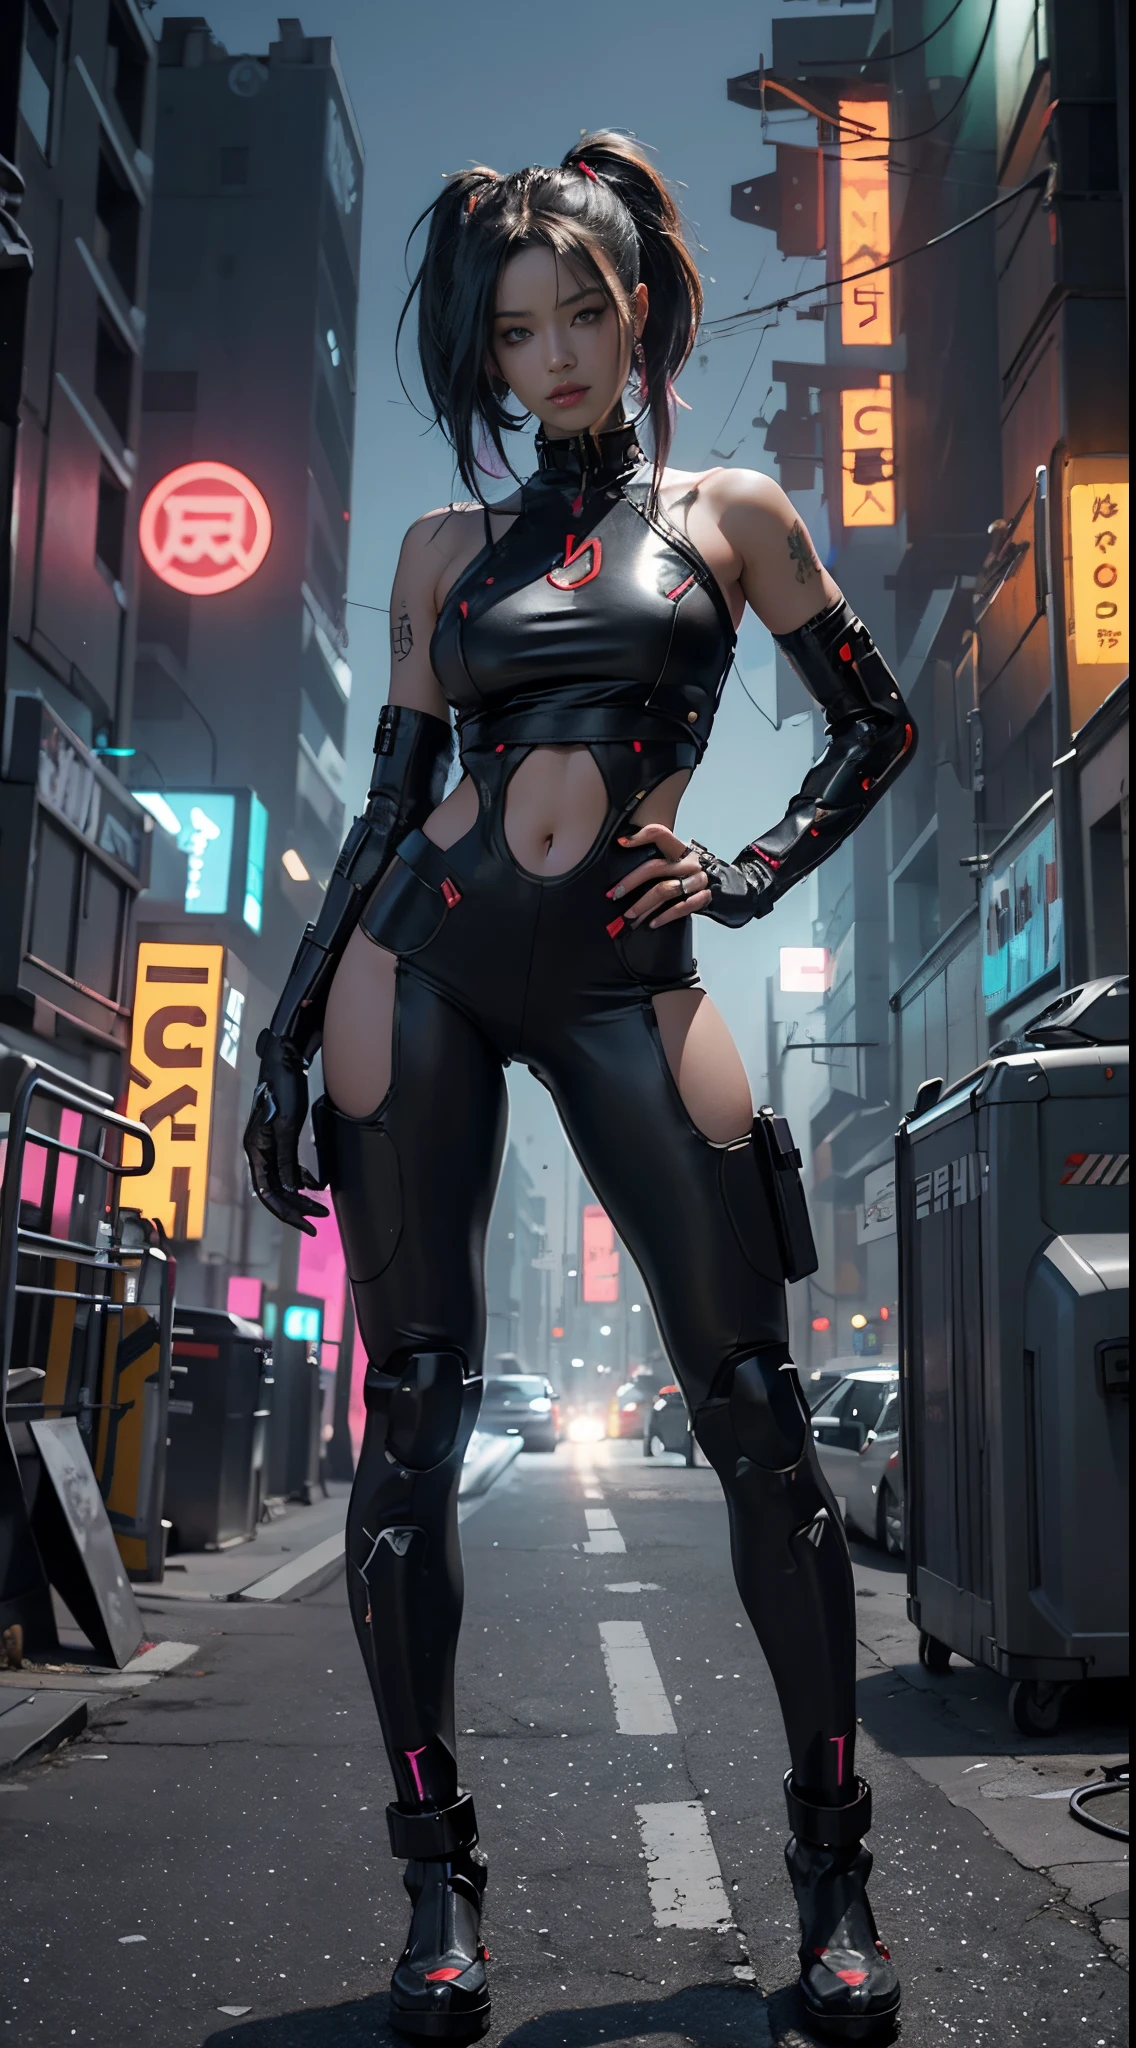 Chica cyborg cyberpunk retrofutyrista con partes de robot en el cuerpo ,cuencia avamzada todo de color negro , luces de neon rojas ,tetas enormes ,en otro planeta